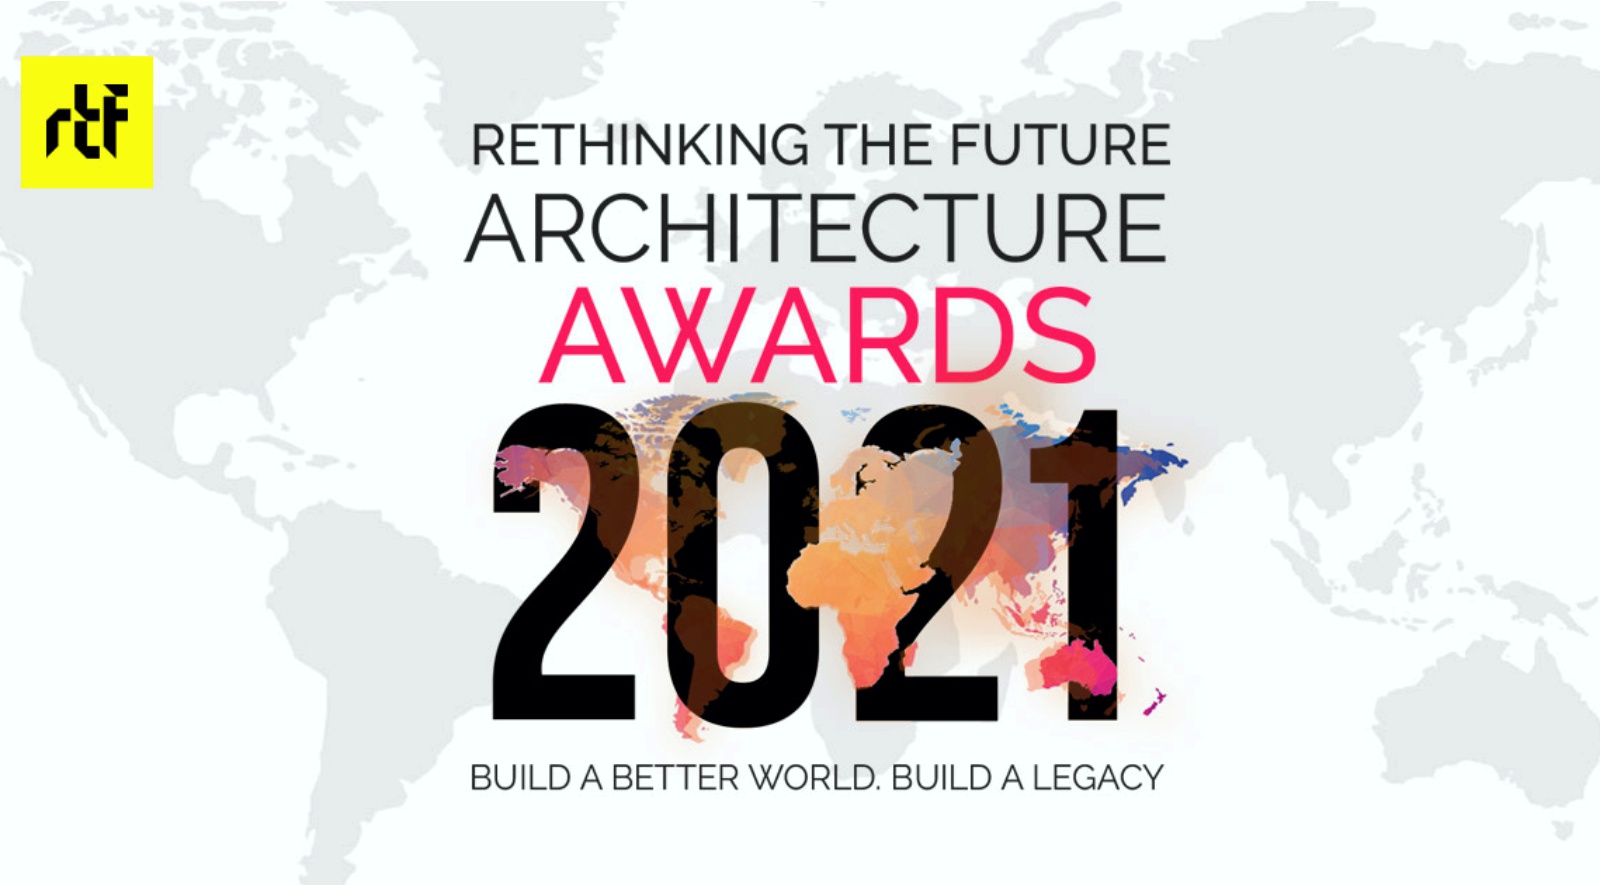 Rethinking The Future Awards 2021